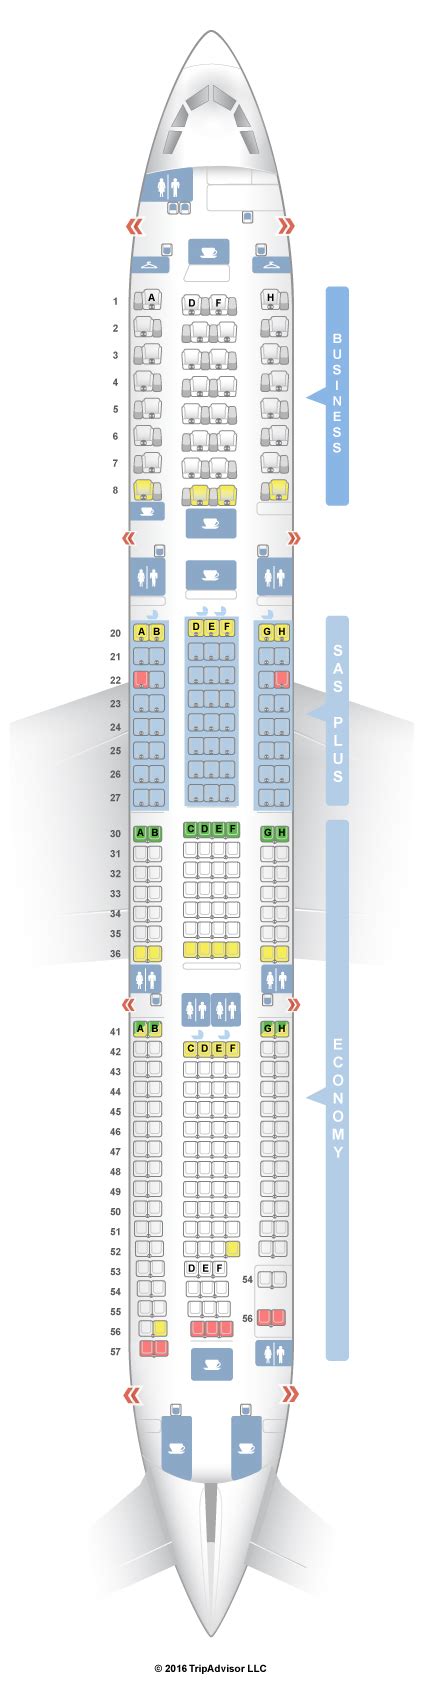 Seatguru Seat Map Sas Airbus A330 300 333